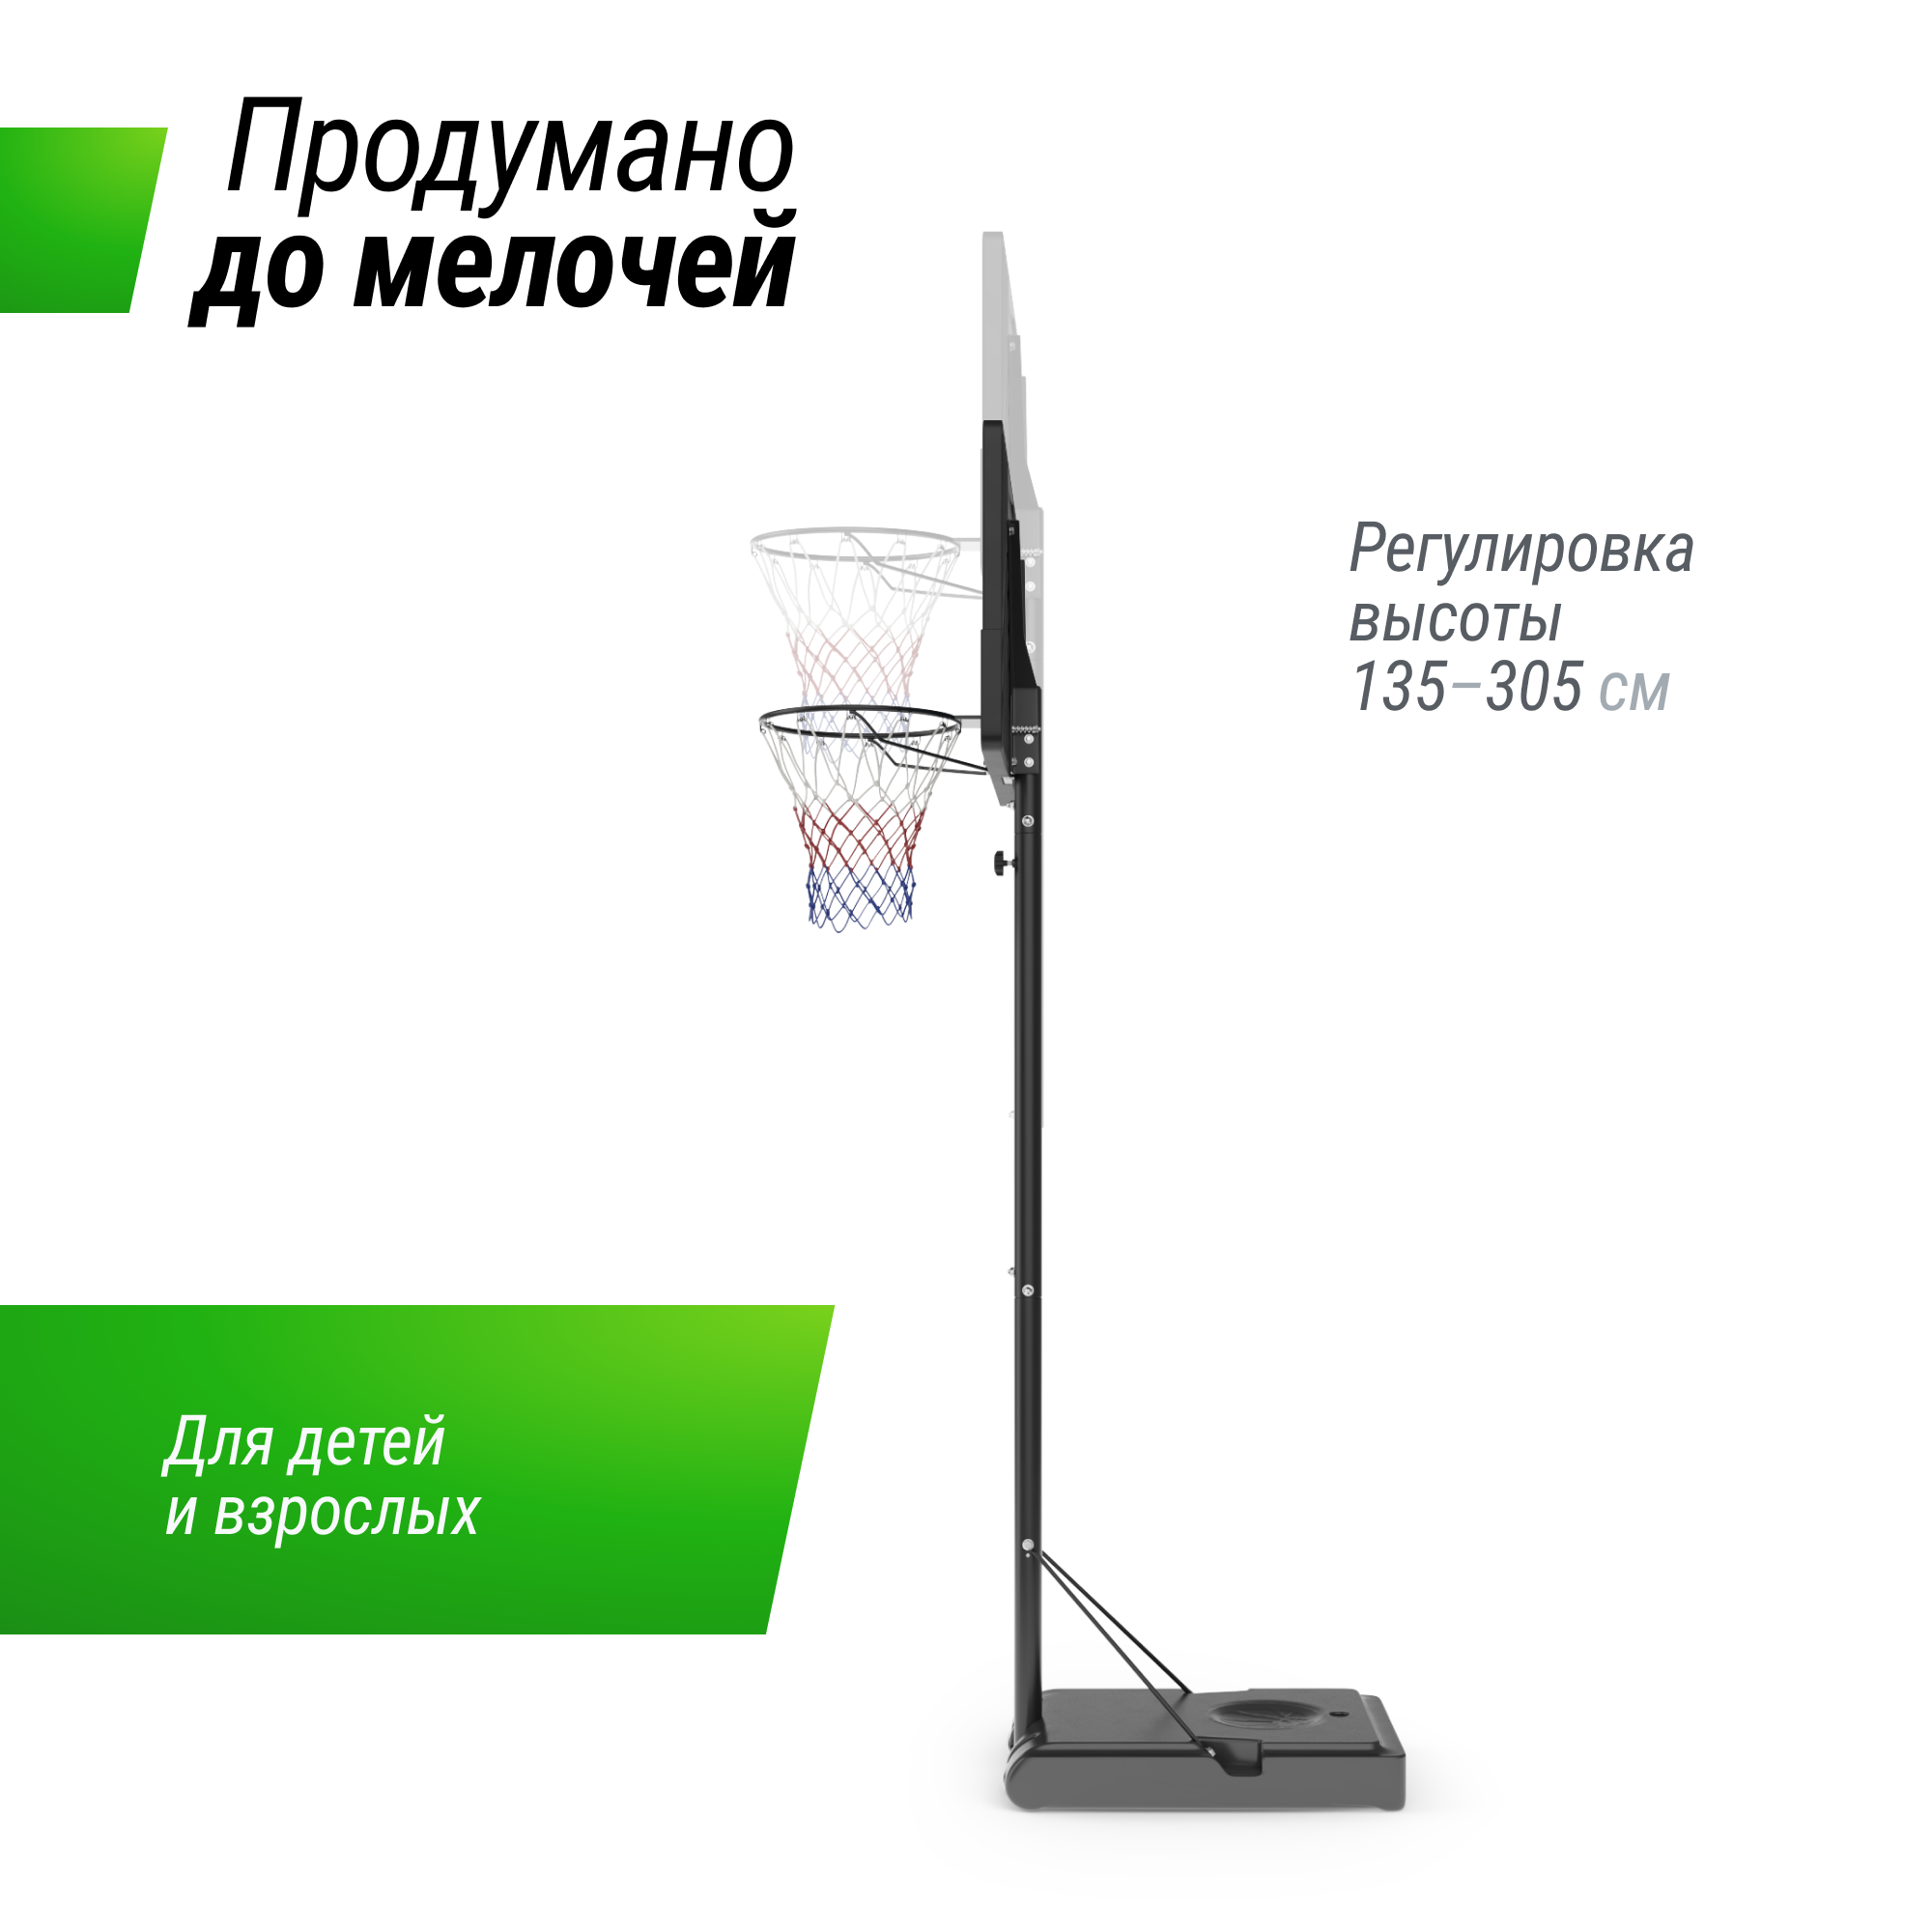 Баскетбольная стойка UNIX Line B-Stand-PE 44"x28" R45 H135-305 см